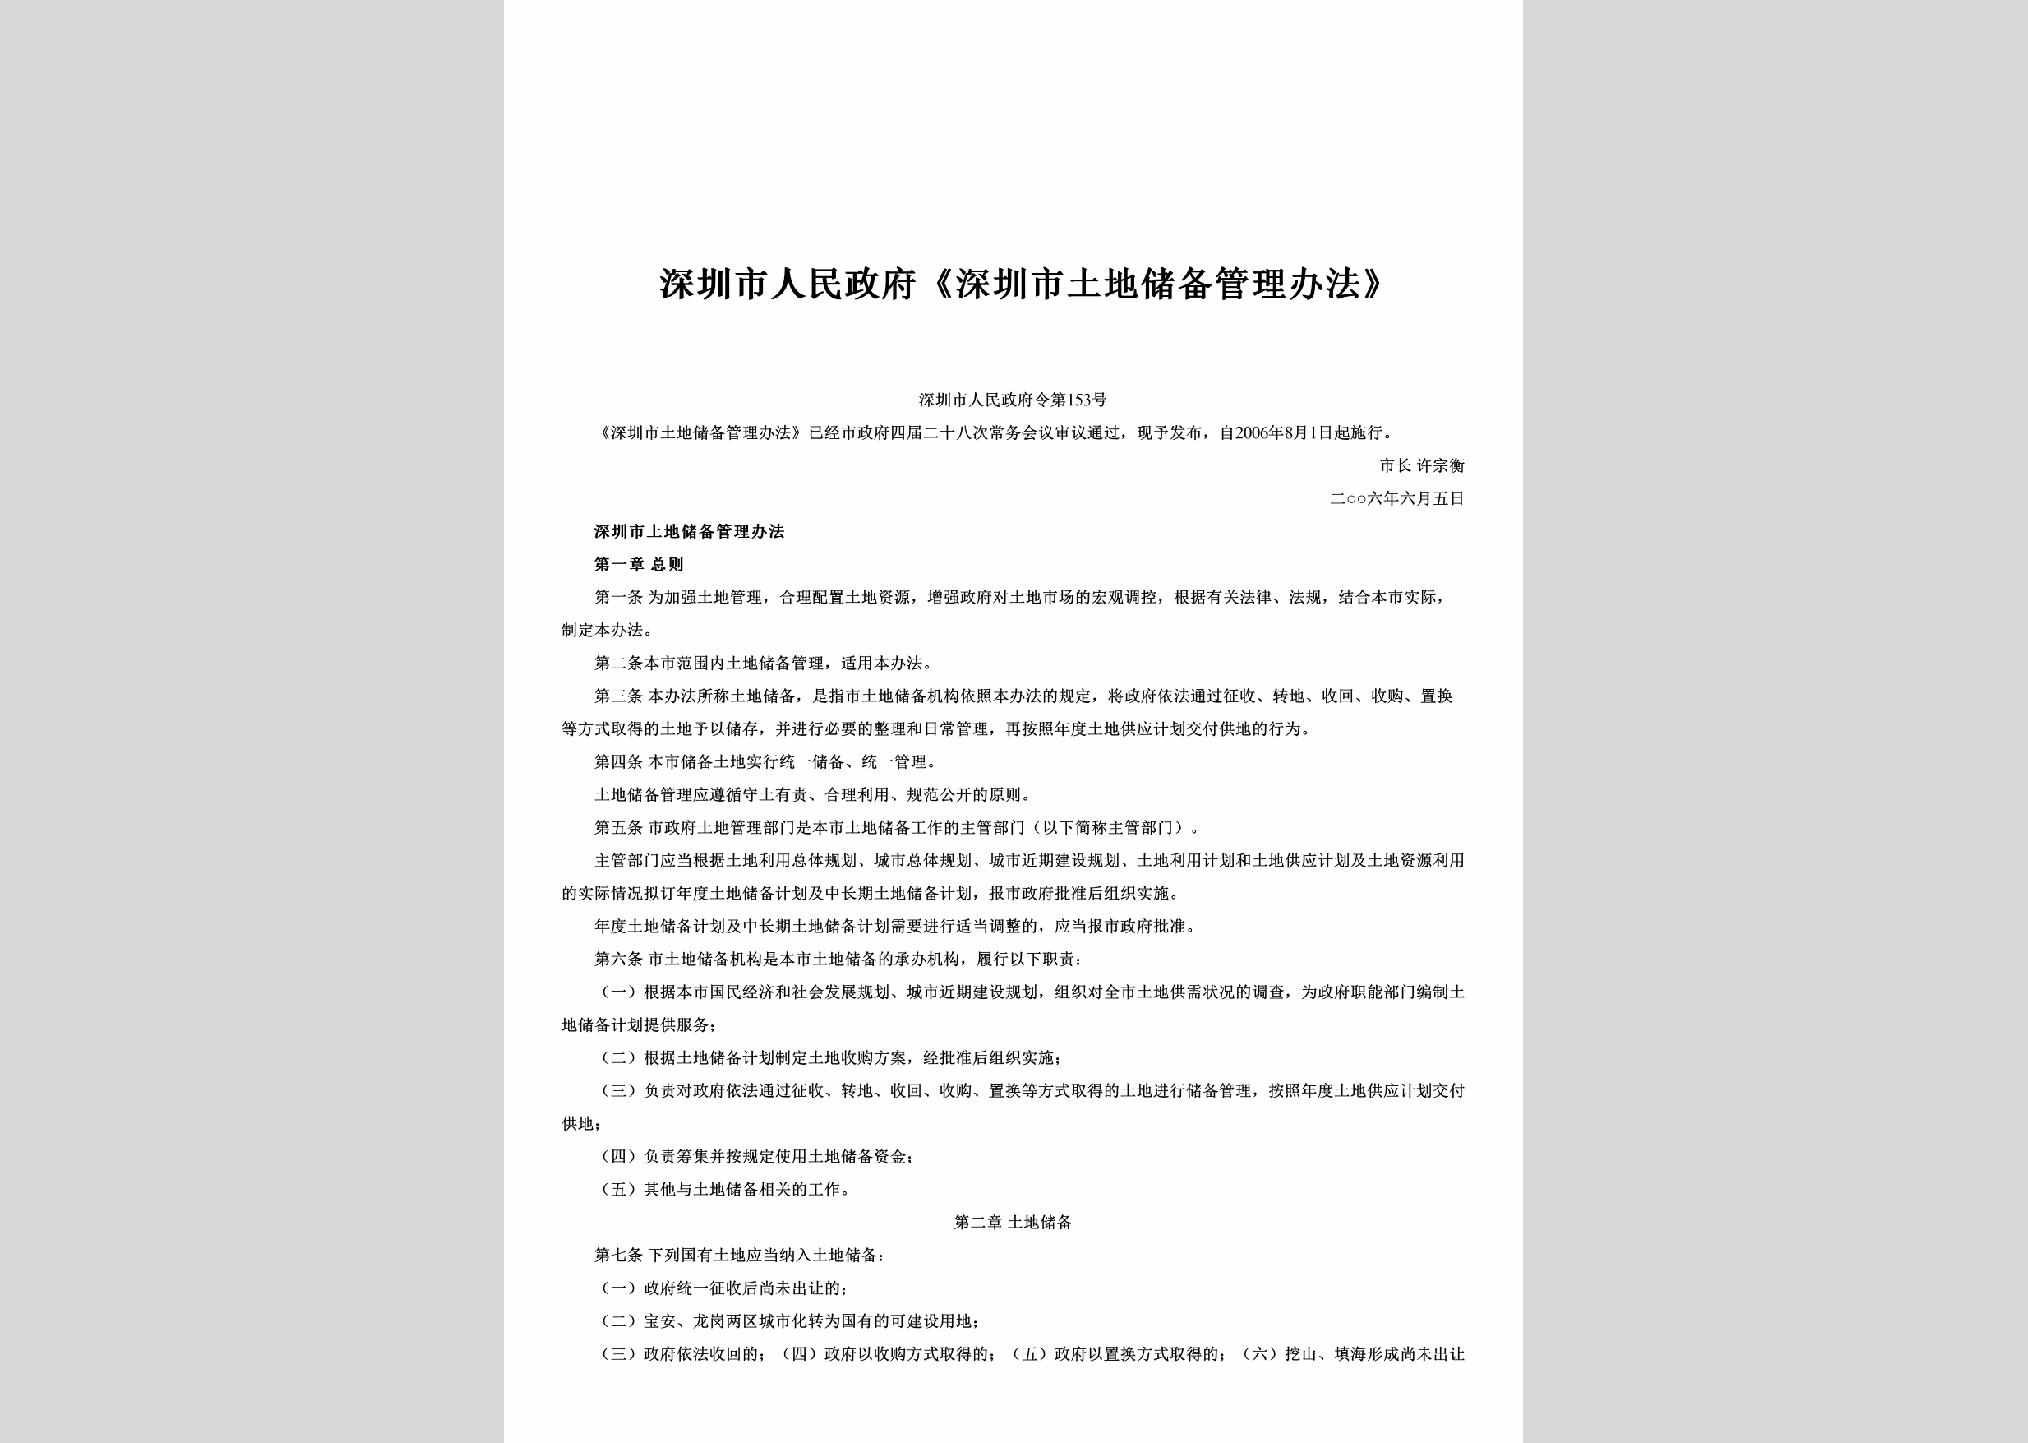 深圳市人民政府令第153号：《深圳市土地储备管理办法》